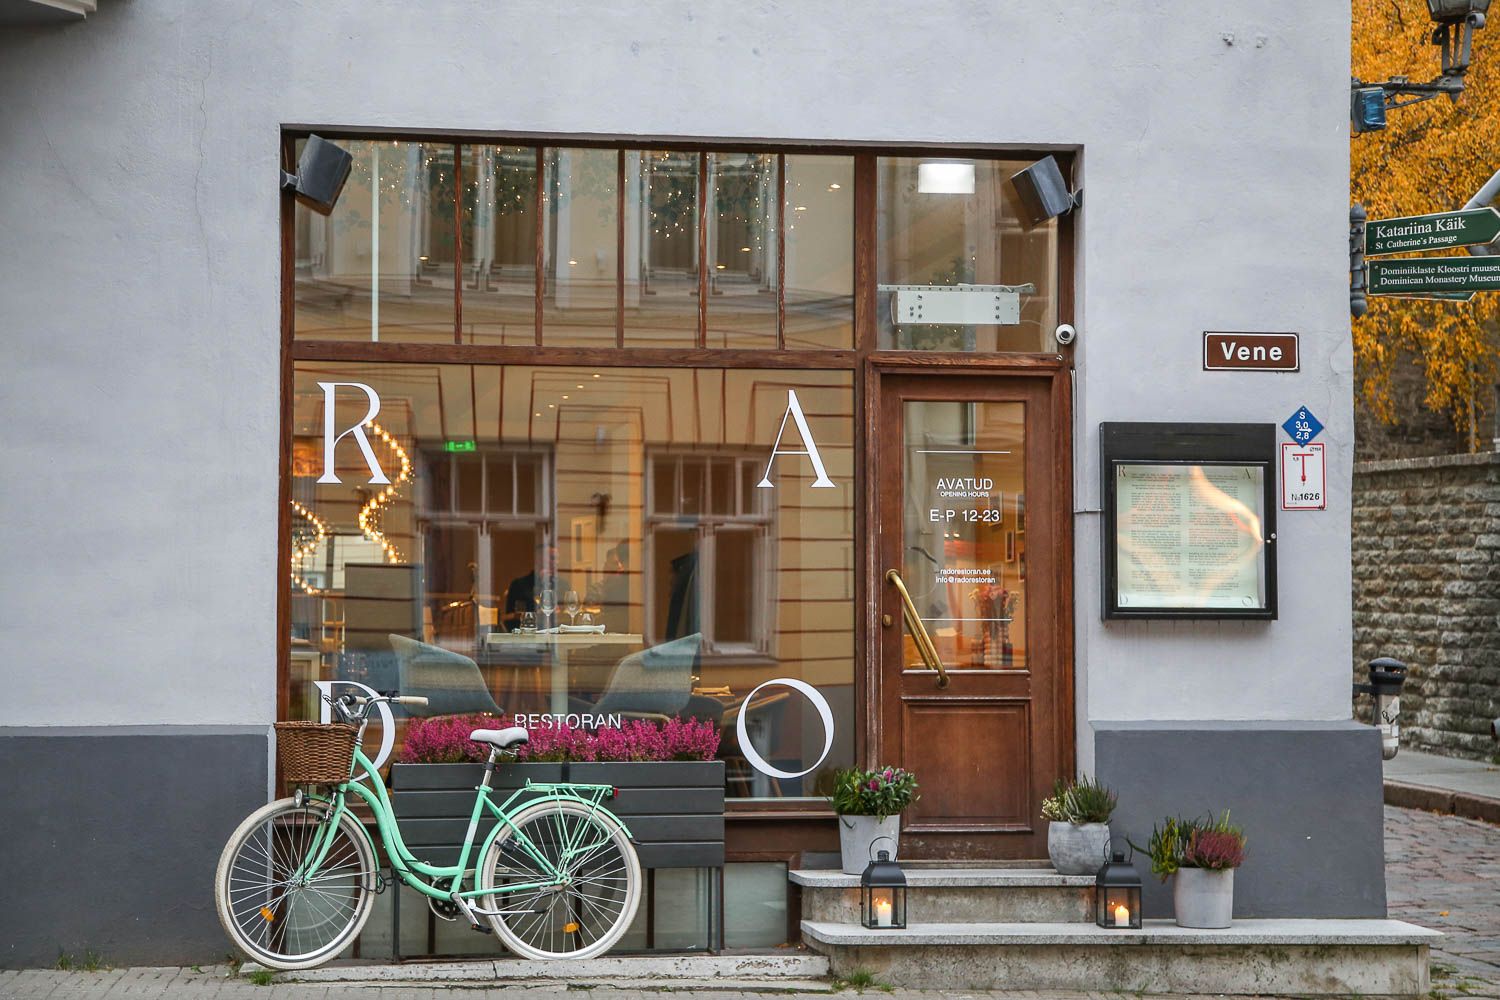 Restoran Rado Tallinn. Lisää kuvia ja ravintola-arvio: https://walleni.us/